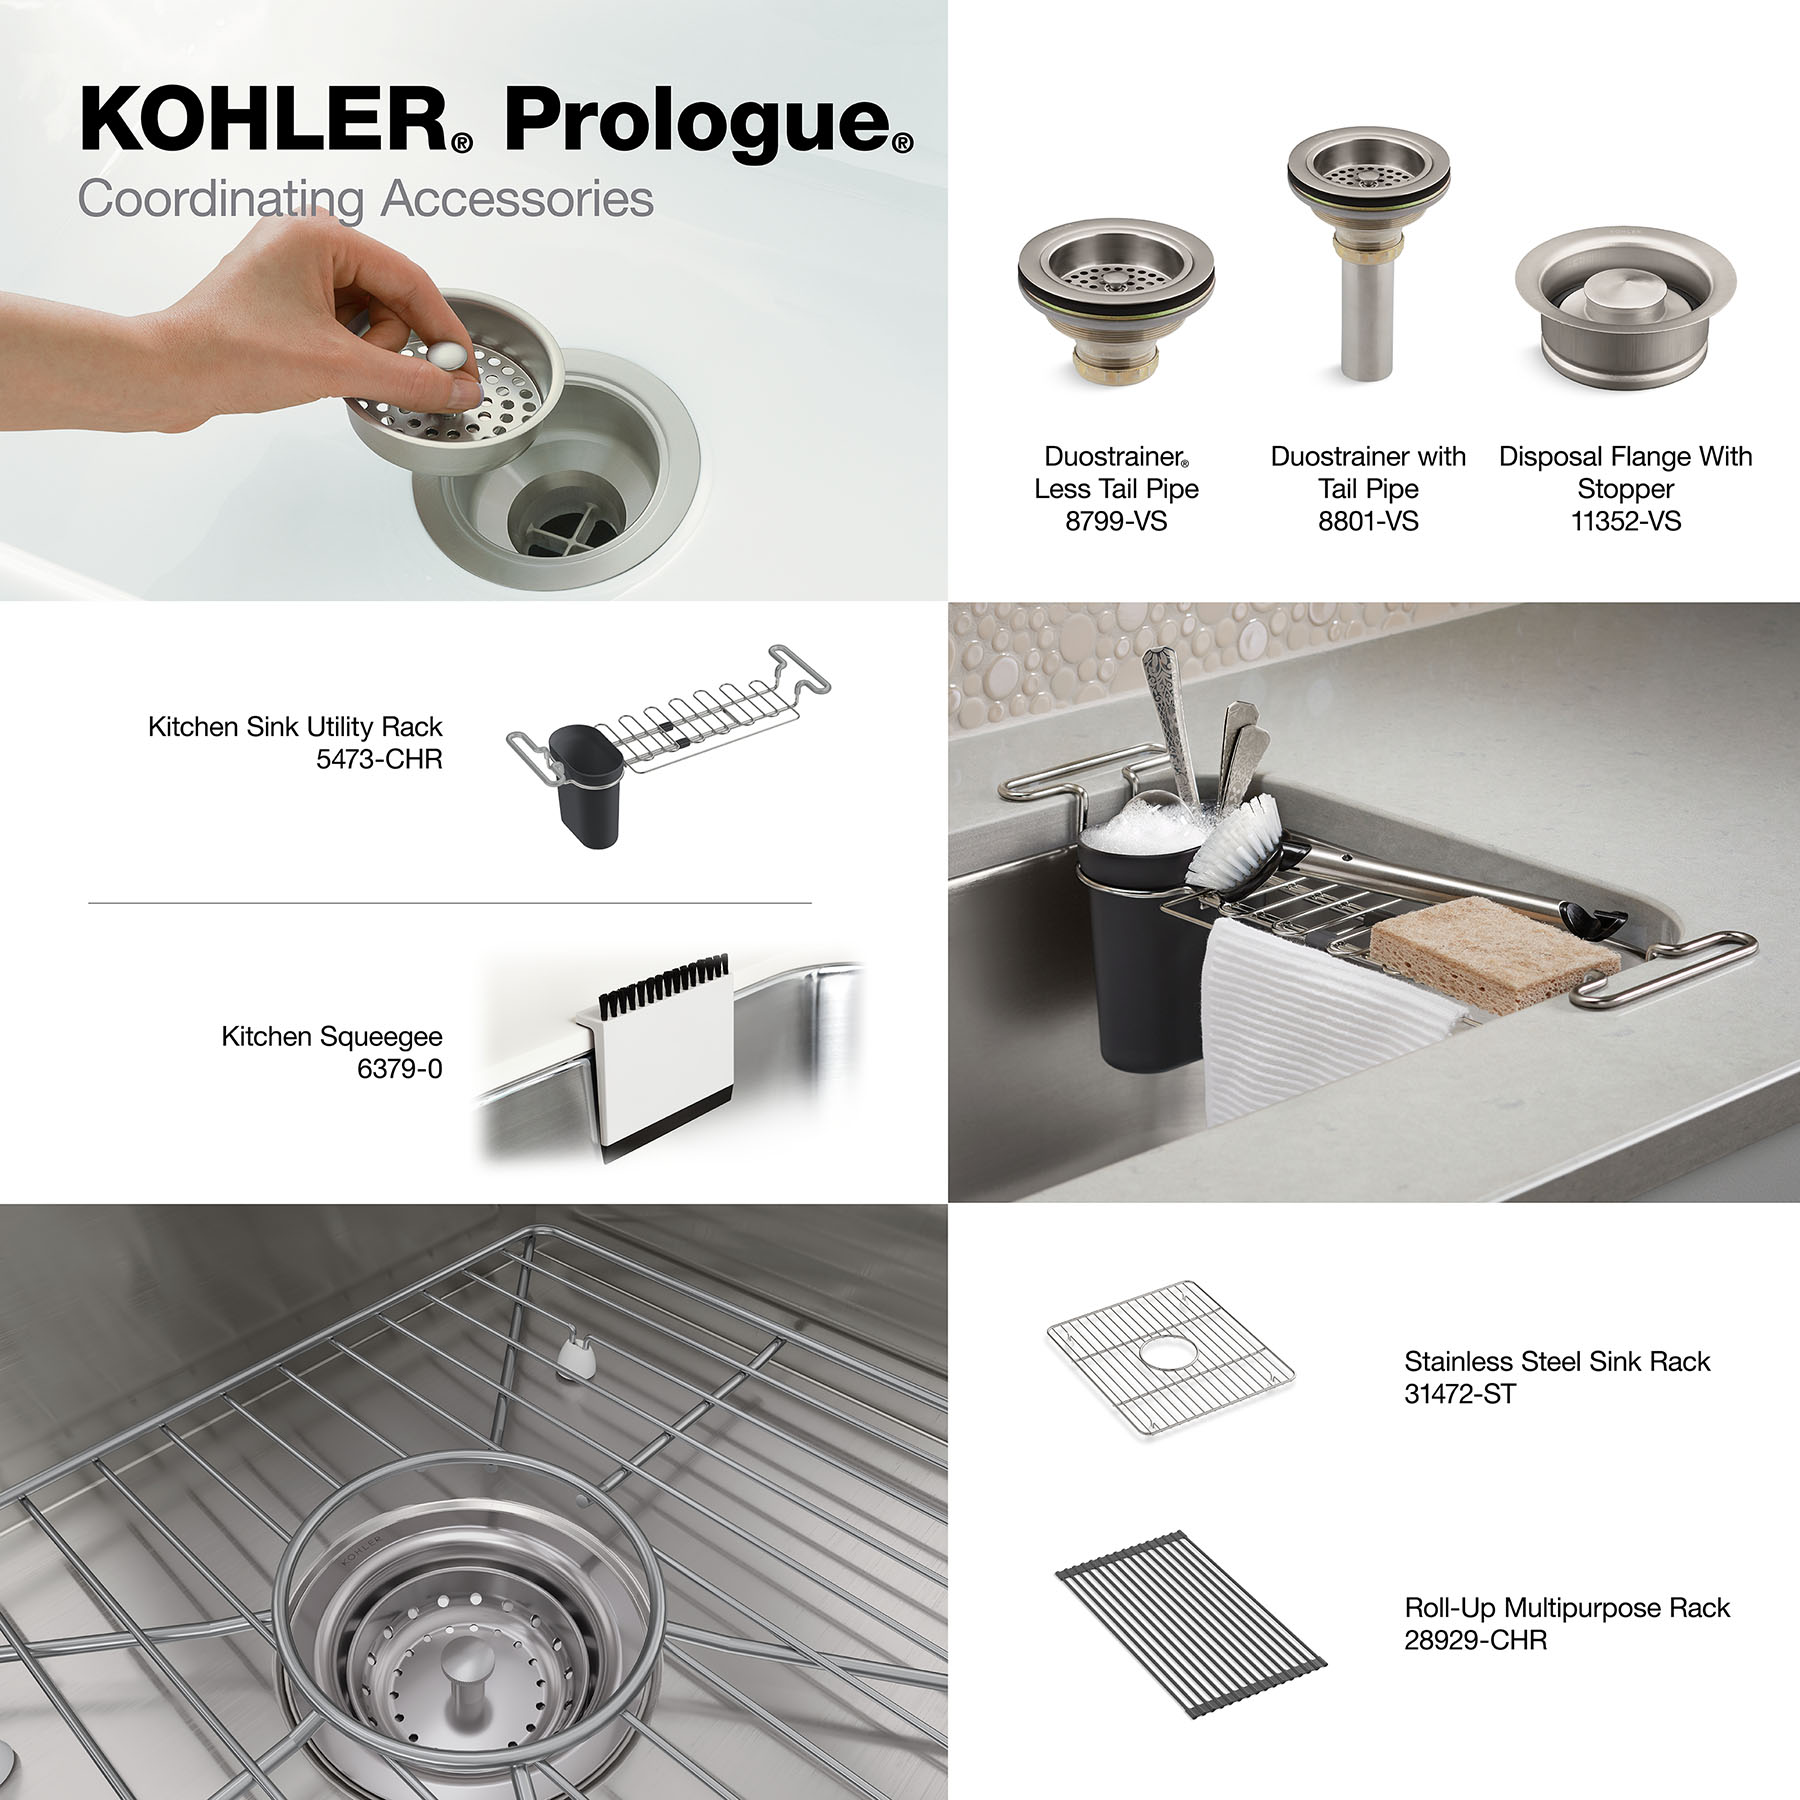 KOHLER K-6379 Kitchen squeegee